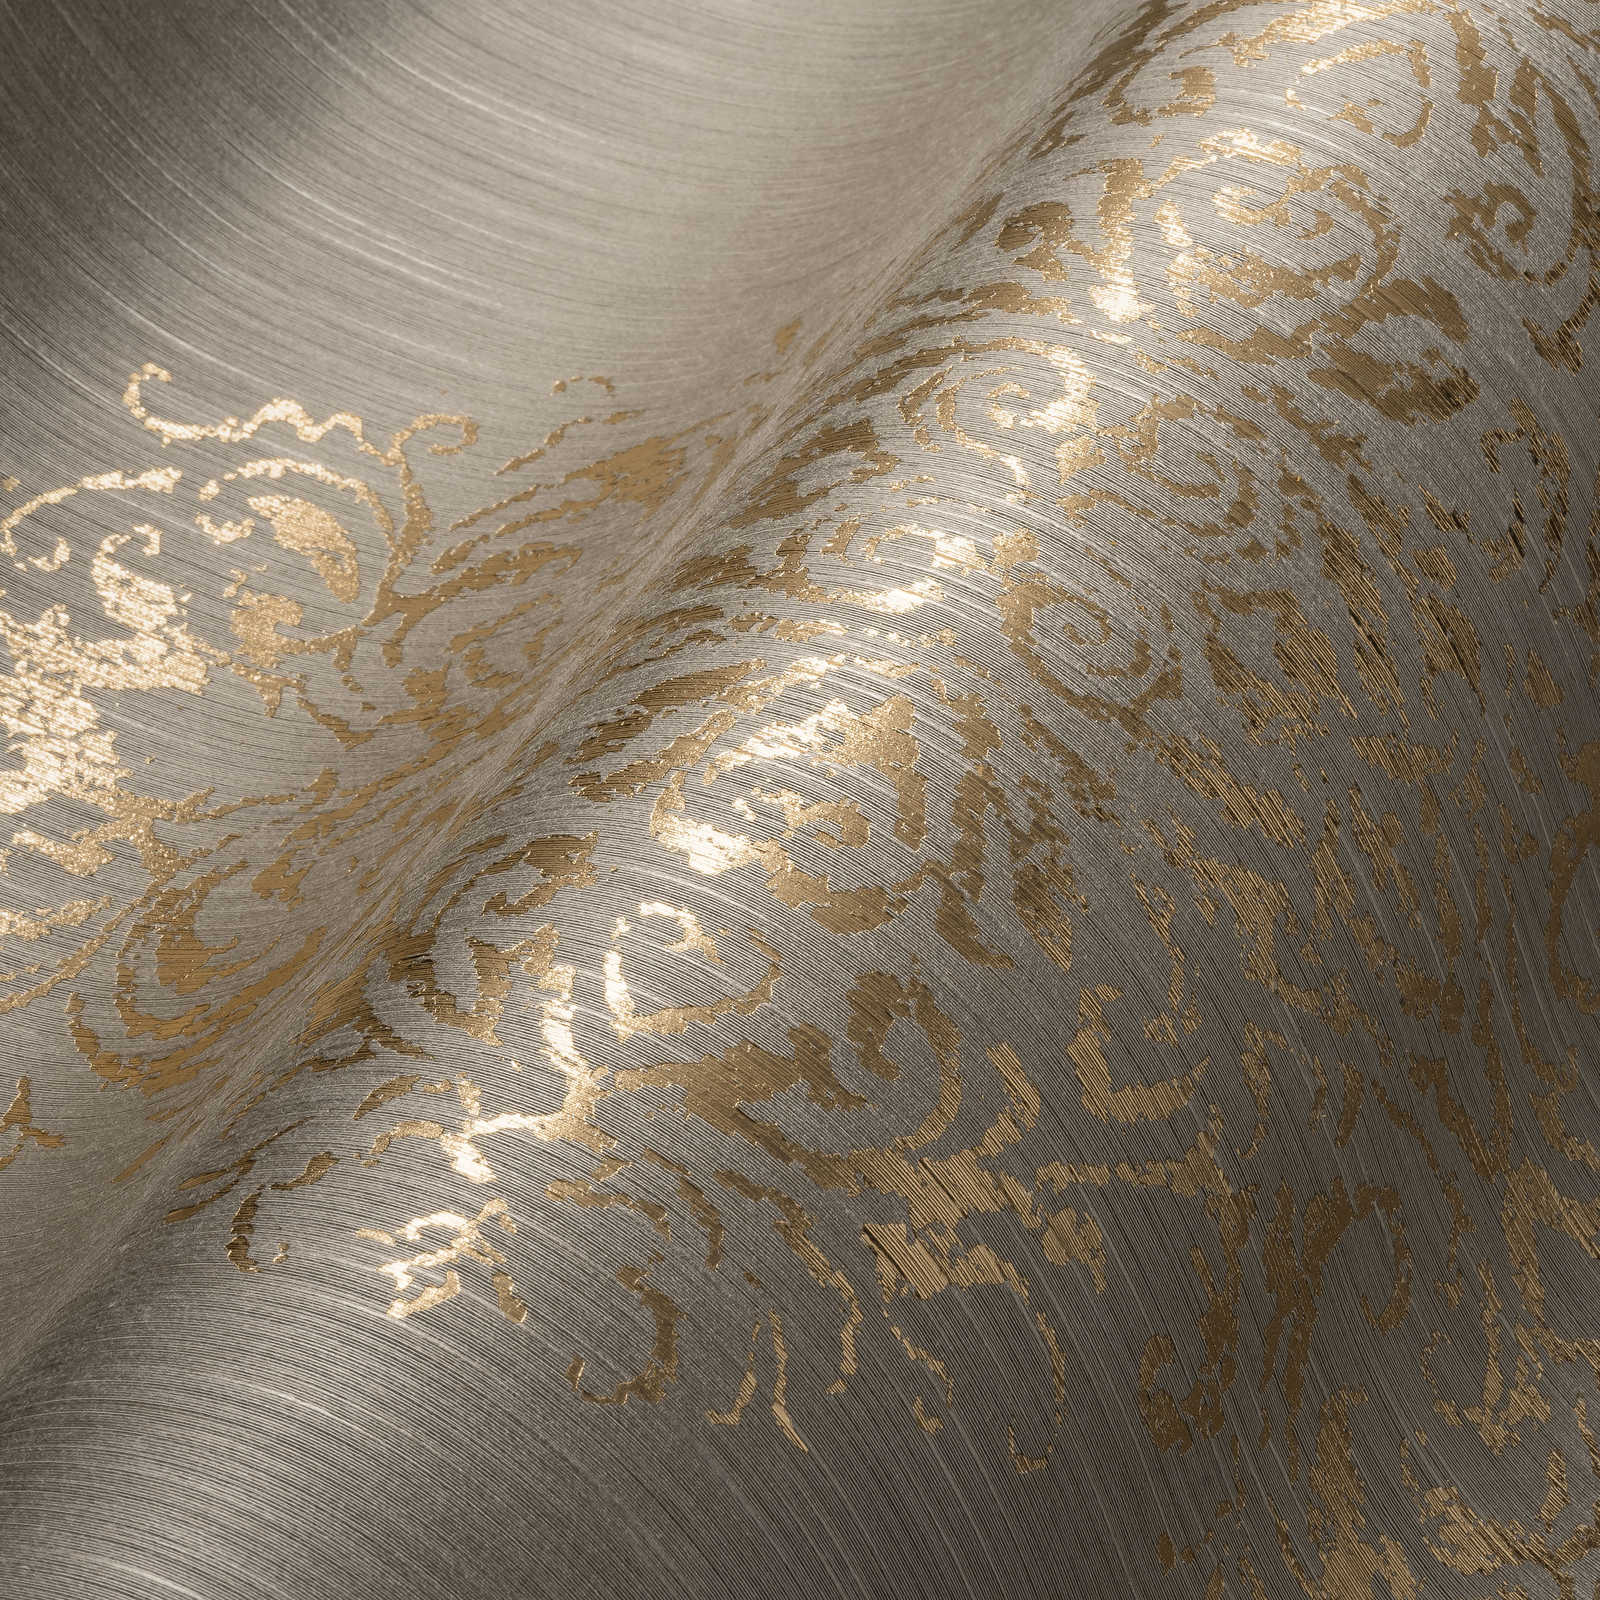             Ornament-Tapete mit Metallic-Effekt im Used-Look – Beige, Gold
        